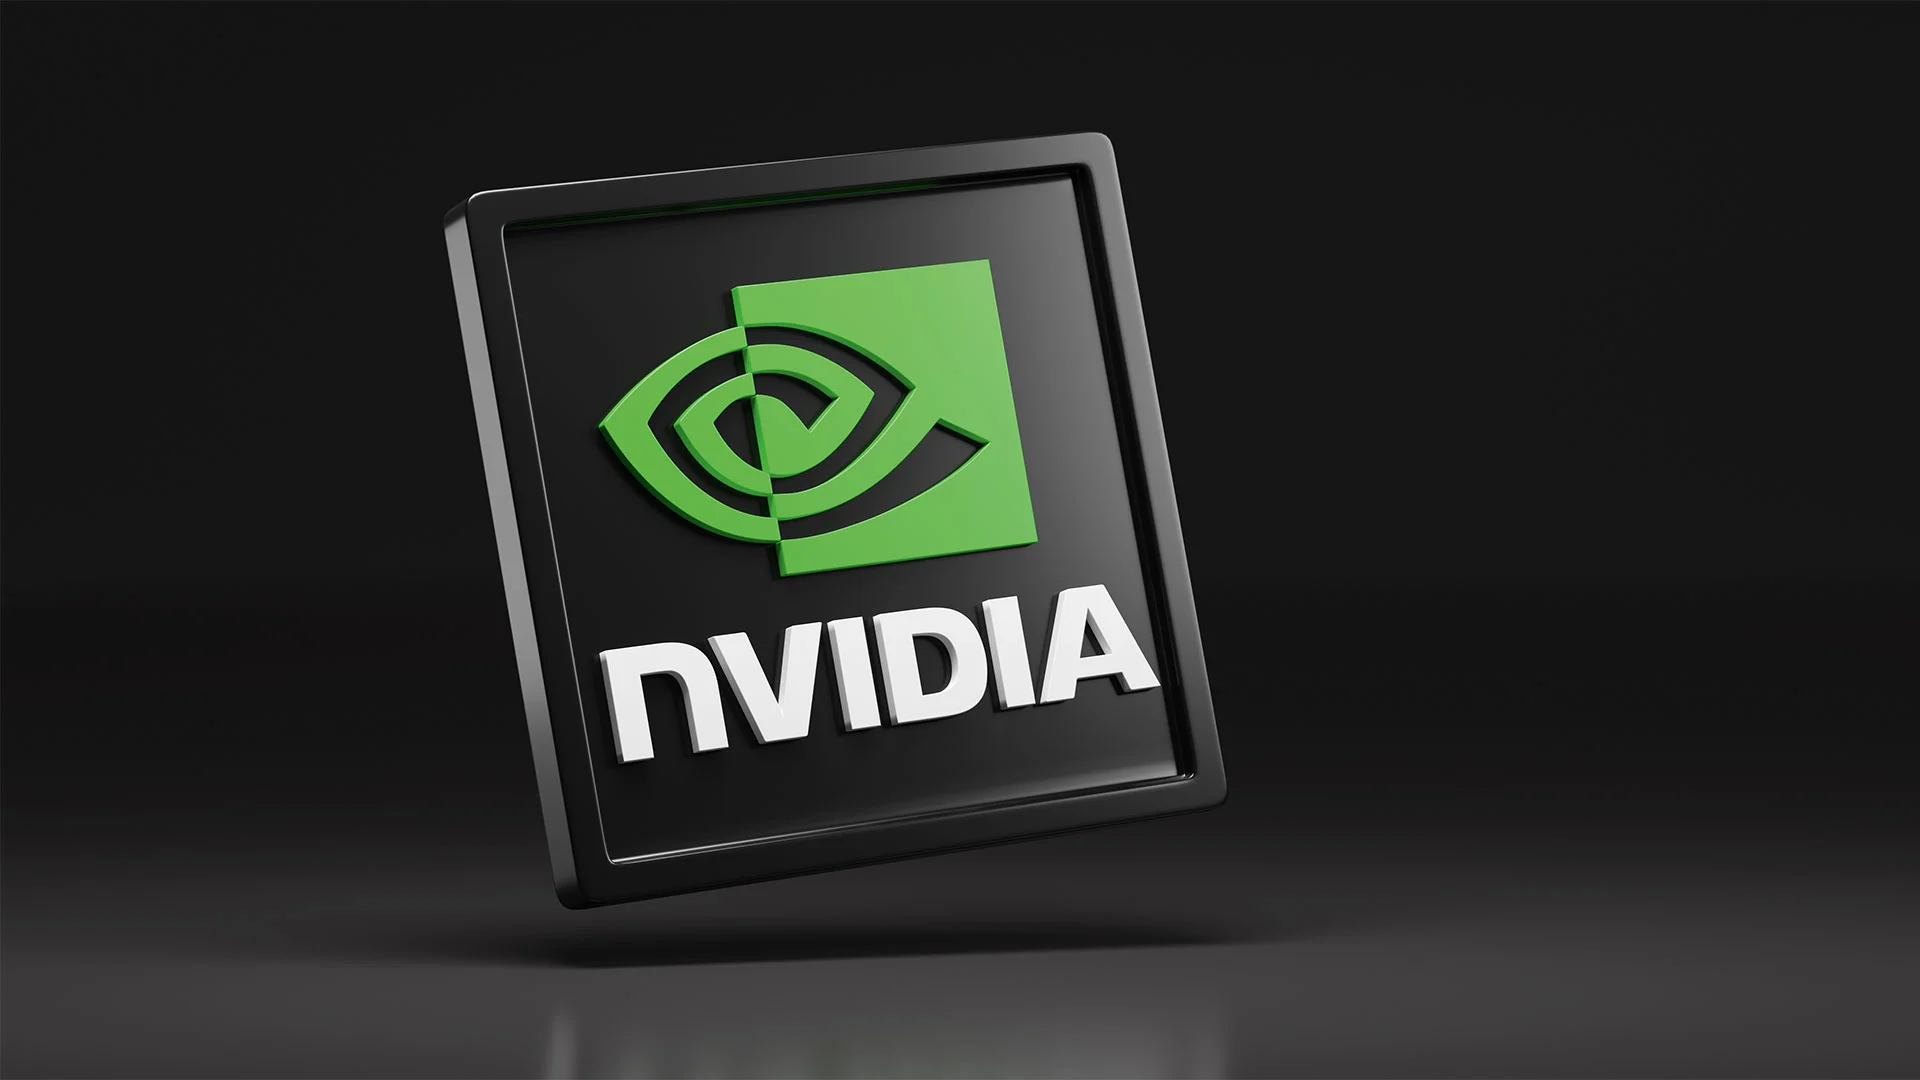 Tech&#8209;Gigant Nvidia setzt über 60% seiner Beteiligungen auf diese KI&#8209;Aktie (Foto: Juan Roballo/Shutterstock)